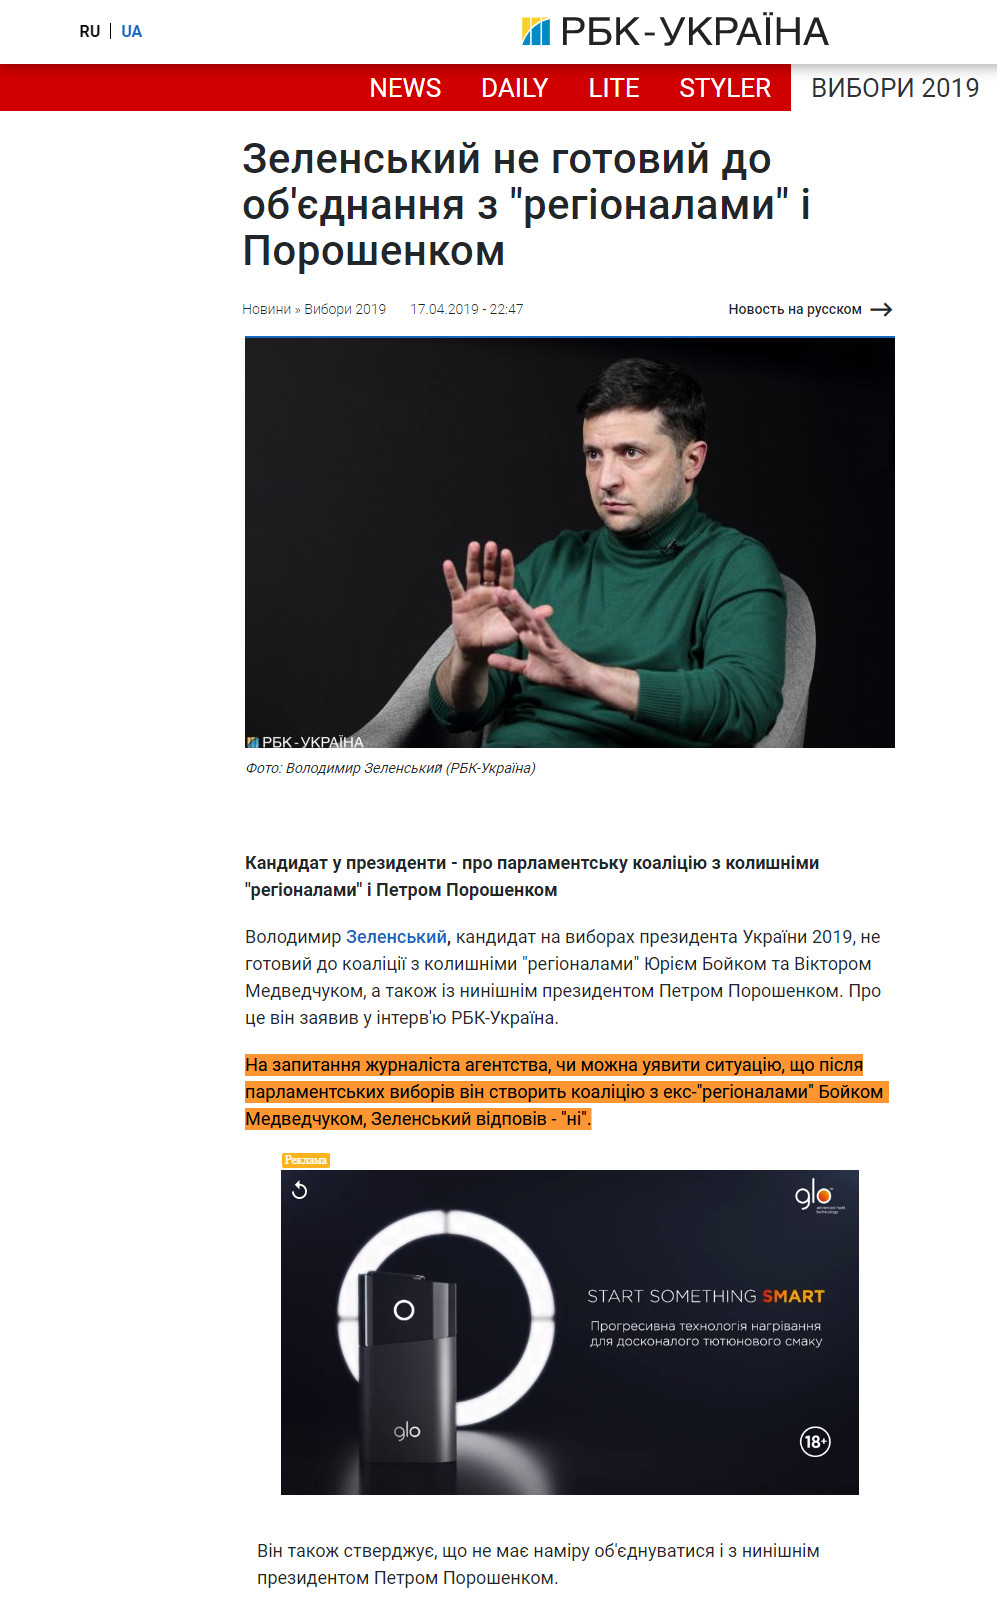 https://www.rbc.ua/ukr/news/zelenskiy-gotov-obedineniyu-regionalami-poroshenko-1555530734.html